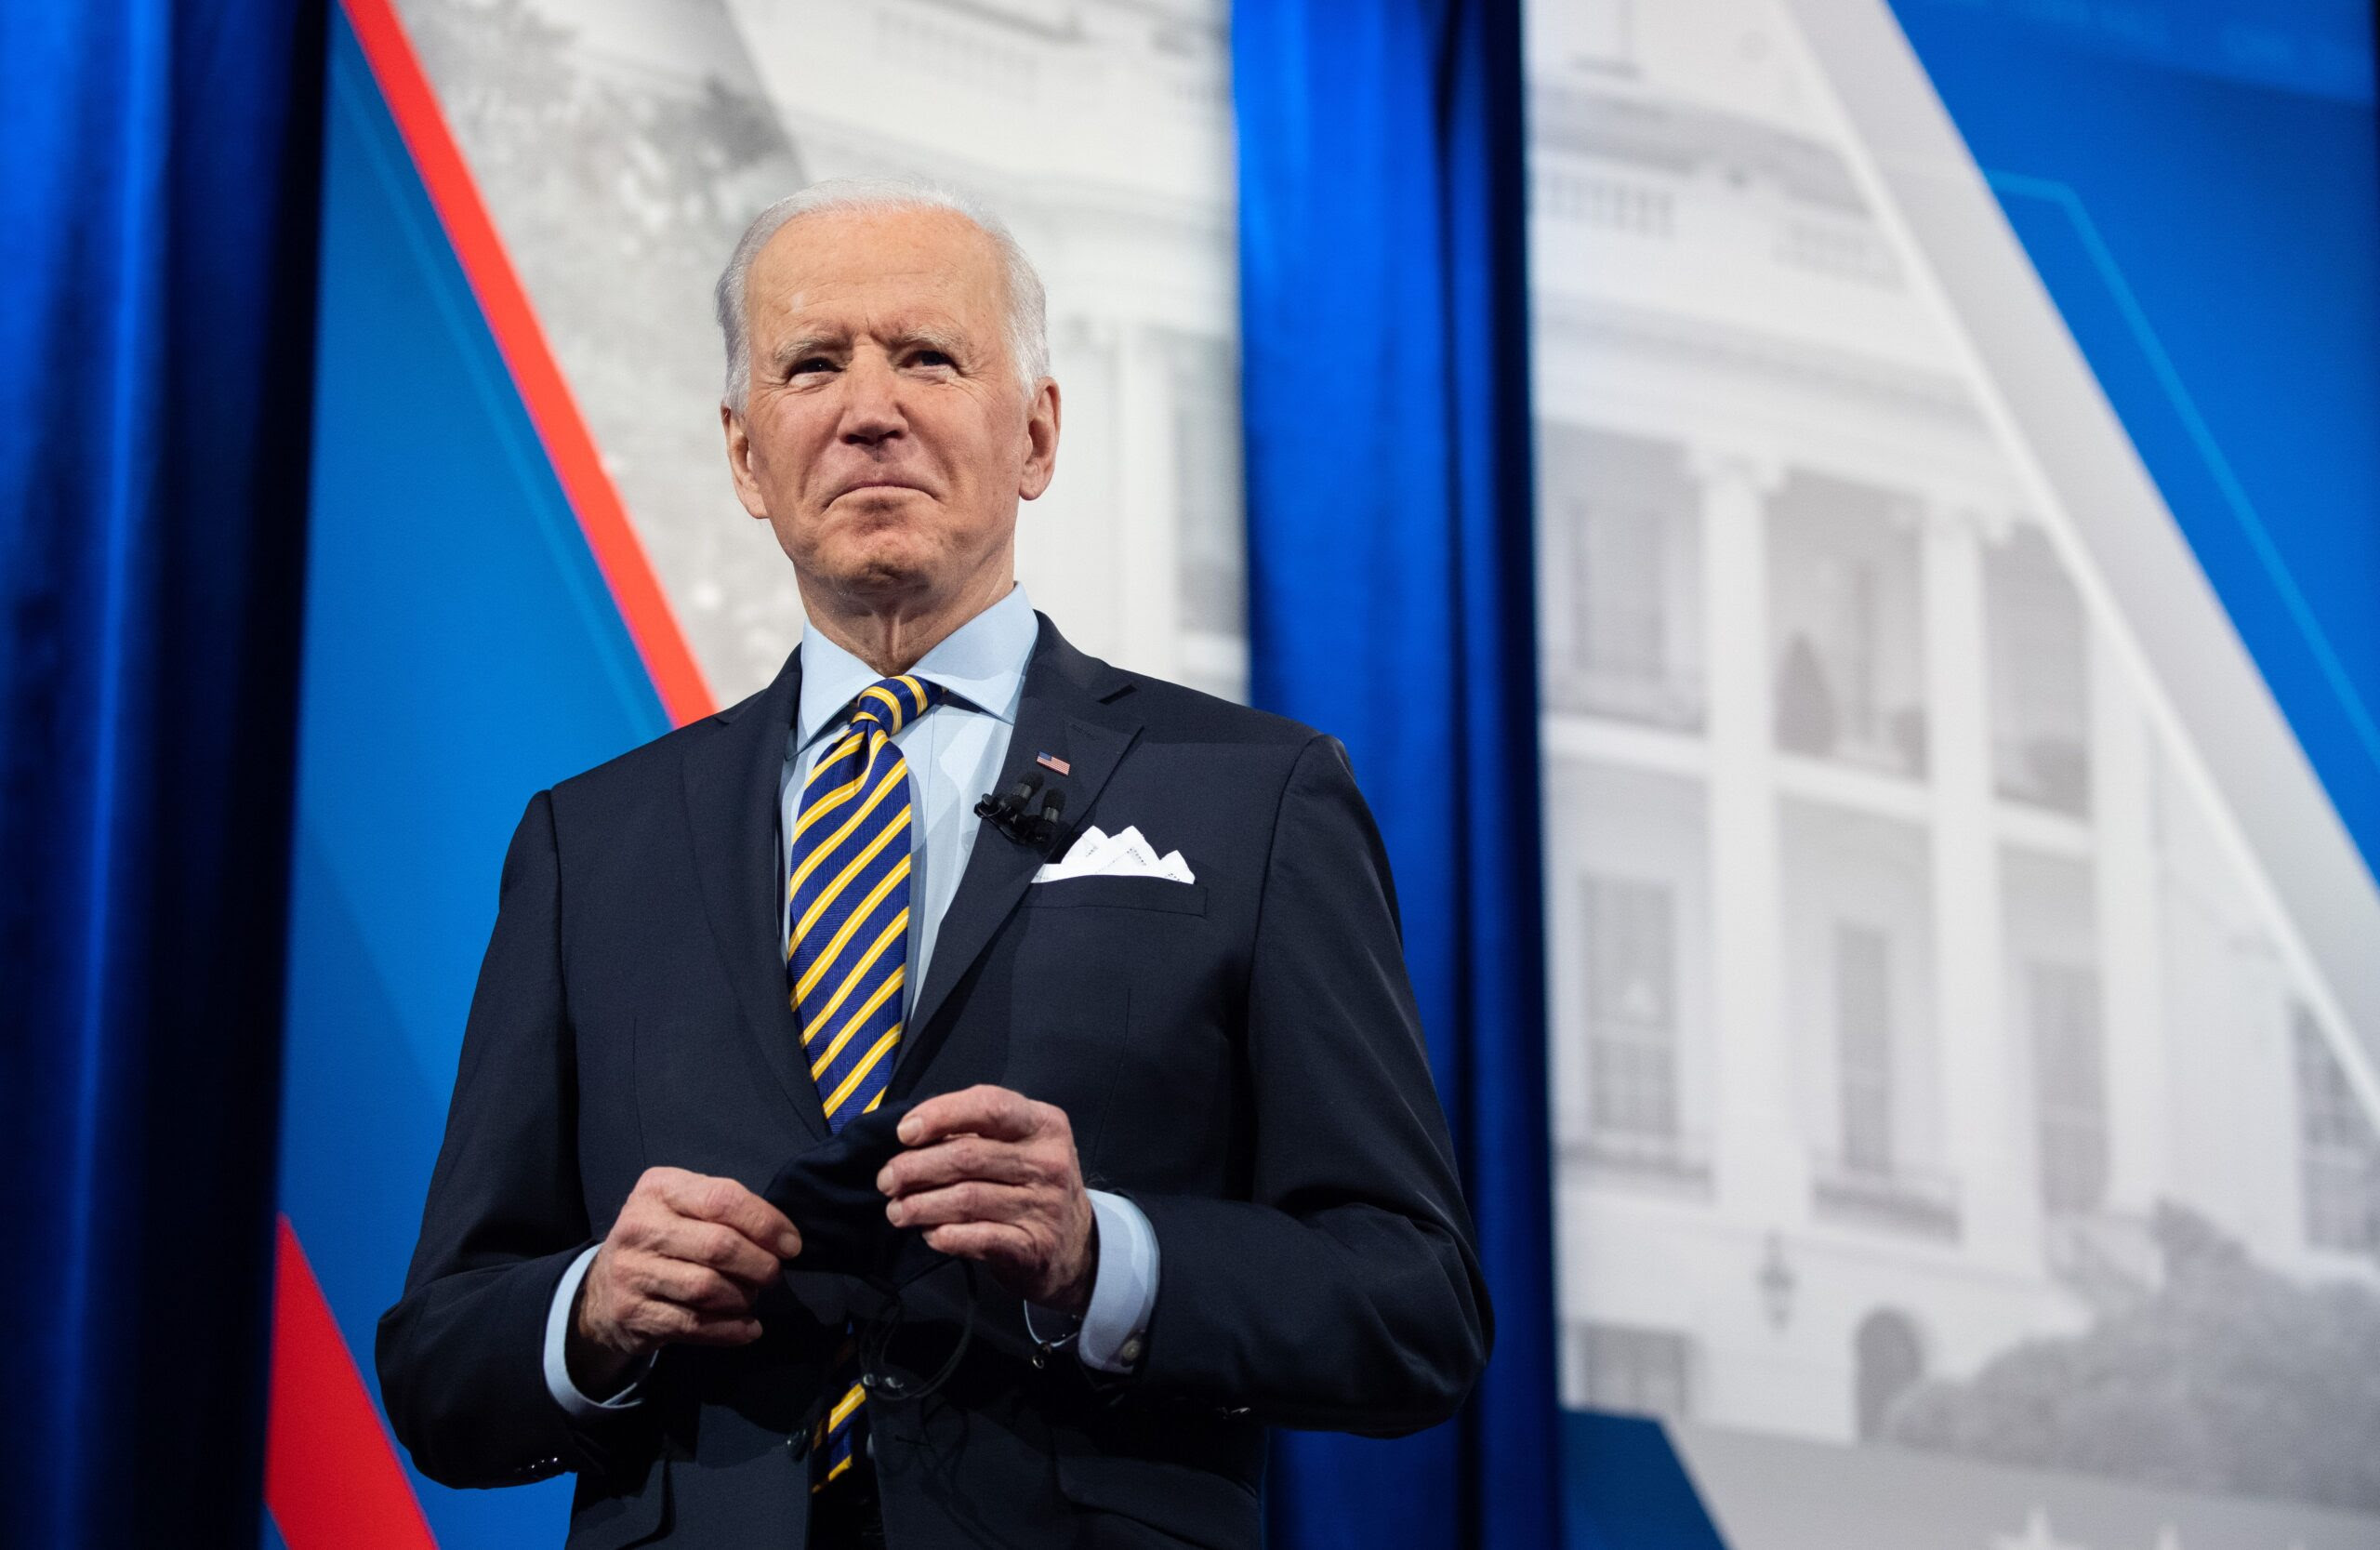 Fact-Checkers Heart Joe Biden